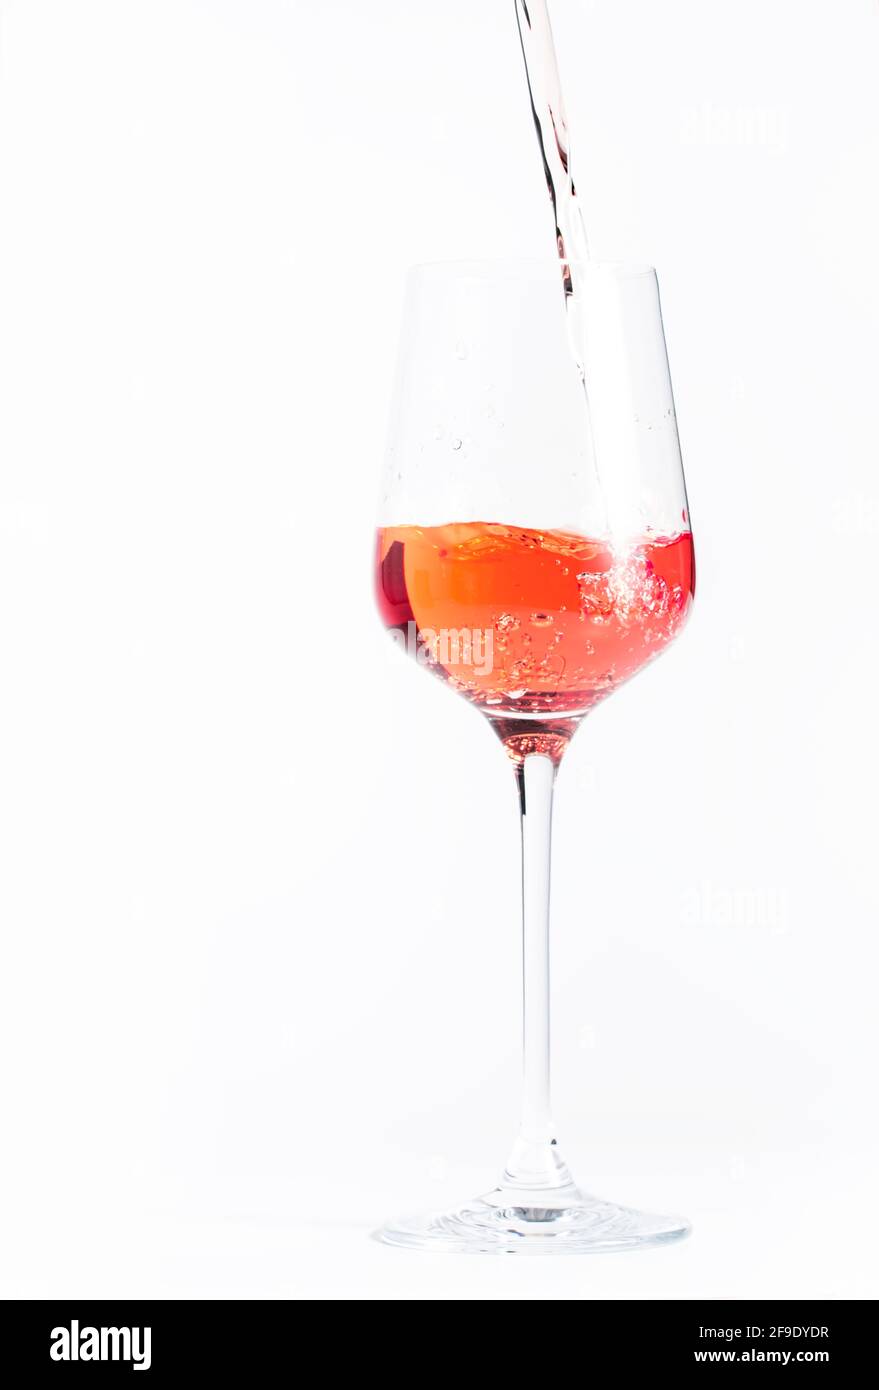 Vino rosato che fuoriesce dalla bottiglia, macinato di panettino bianco. Rosado, rosato o degustazione di vini arrossati in wineshop, concetto bar. Copia spazio Foto Stock